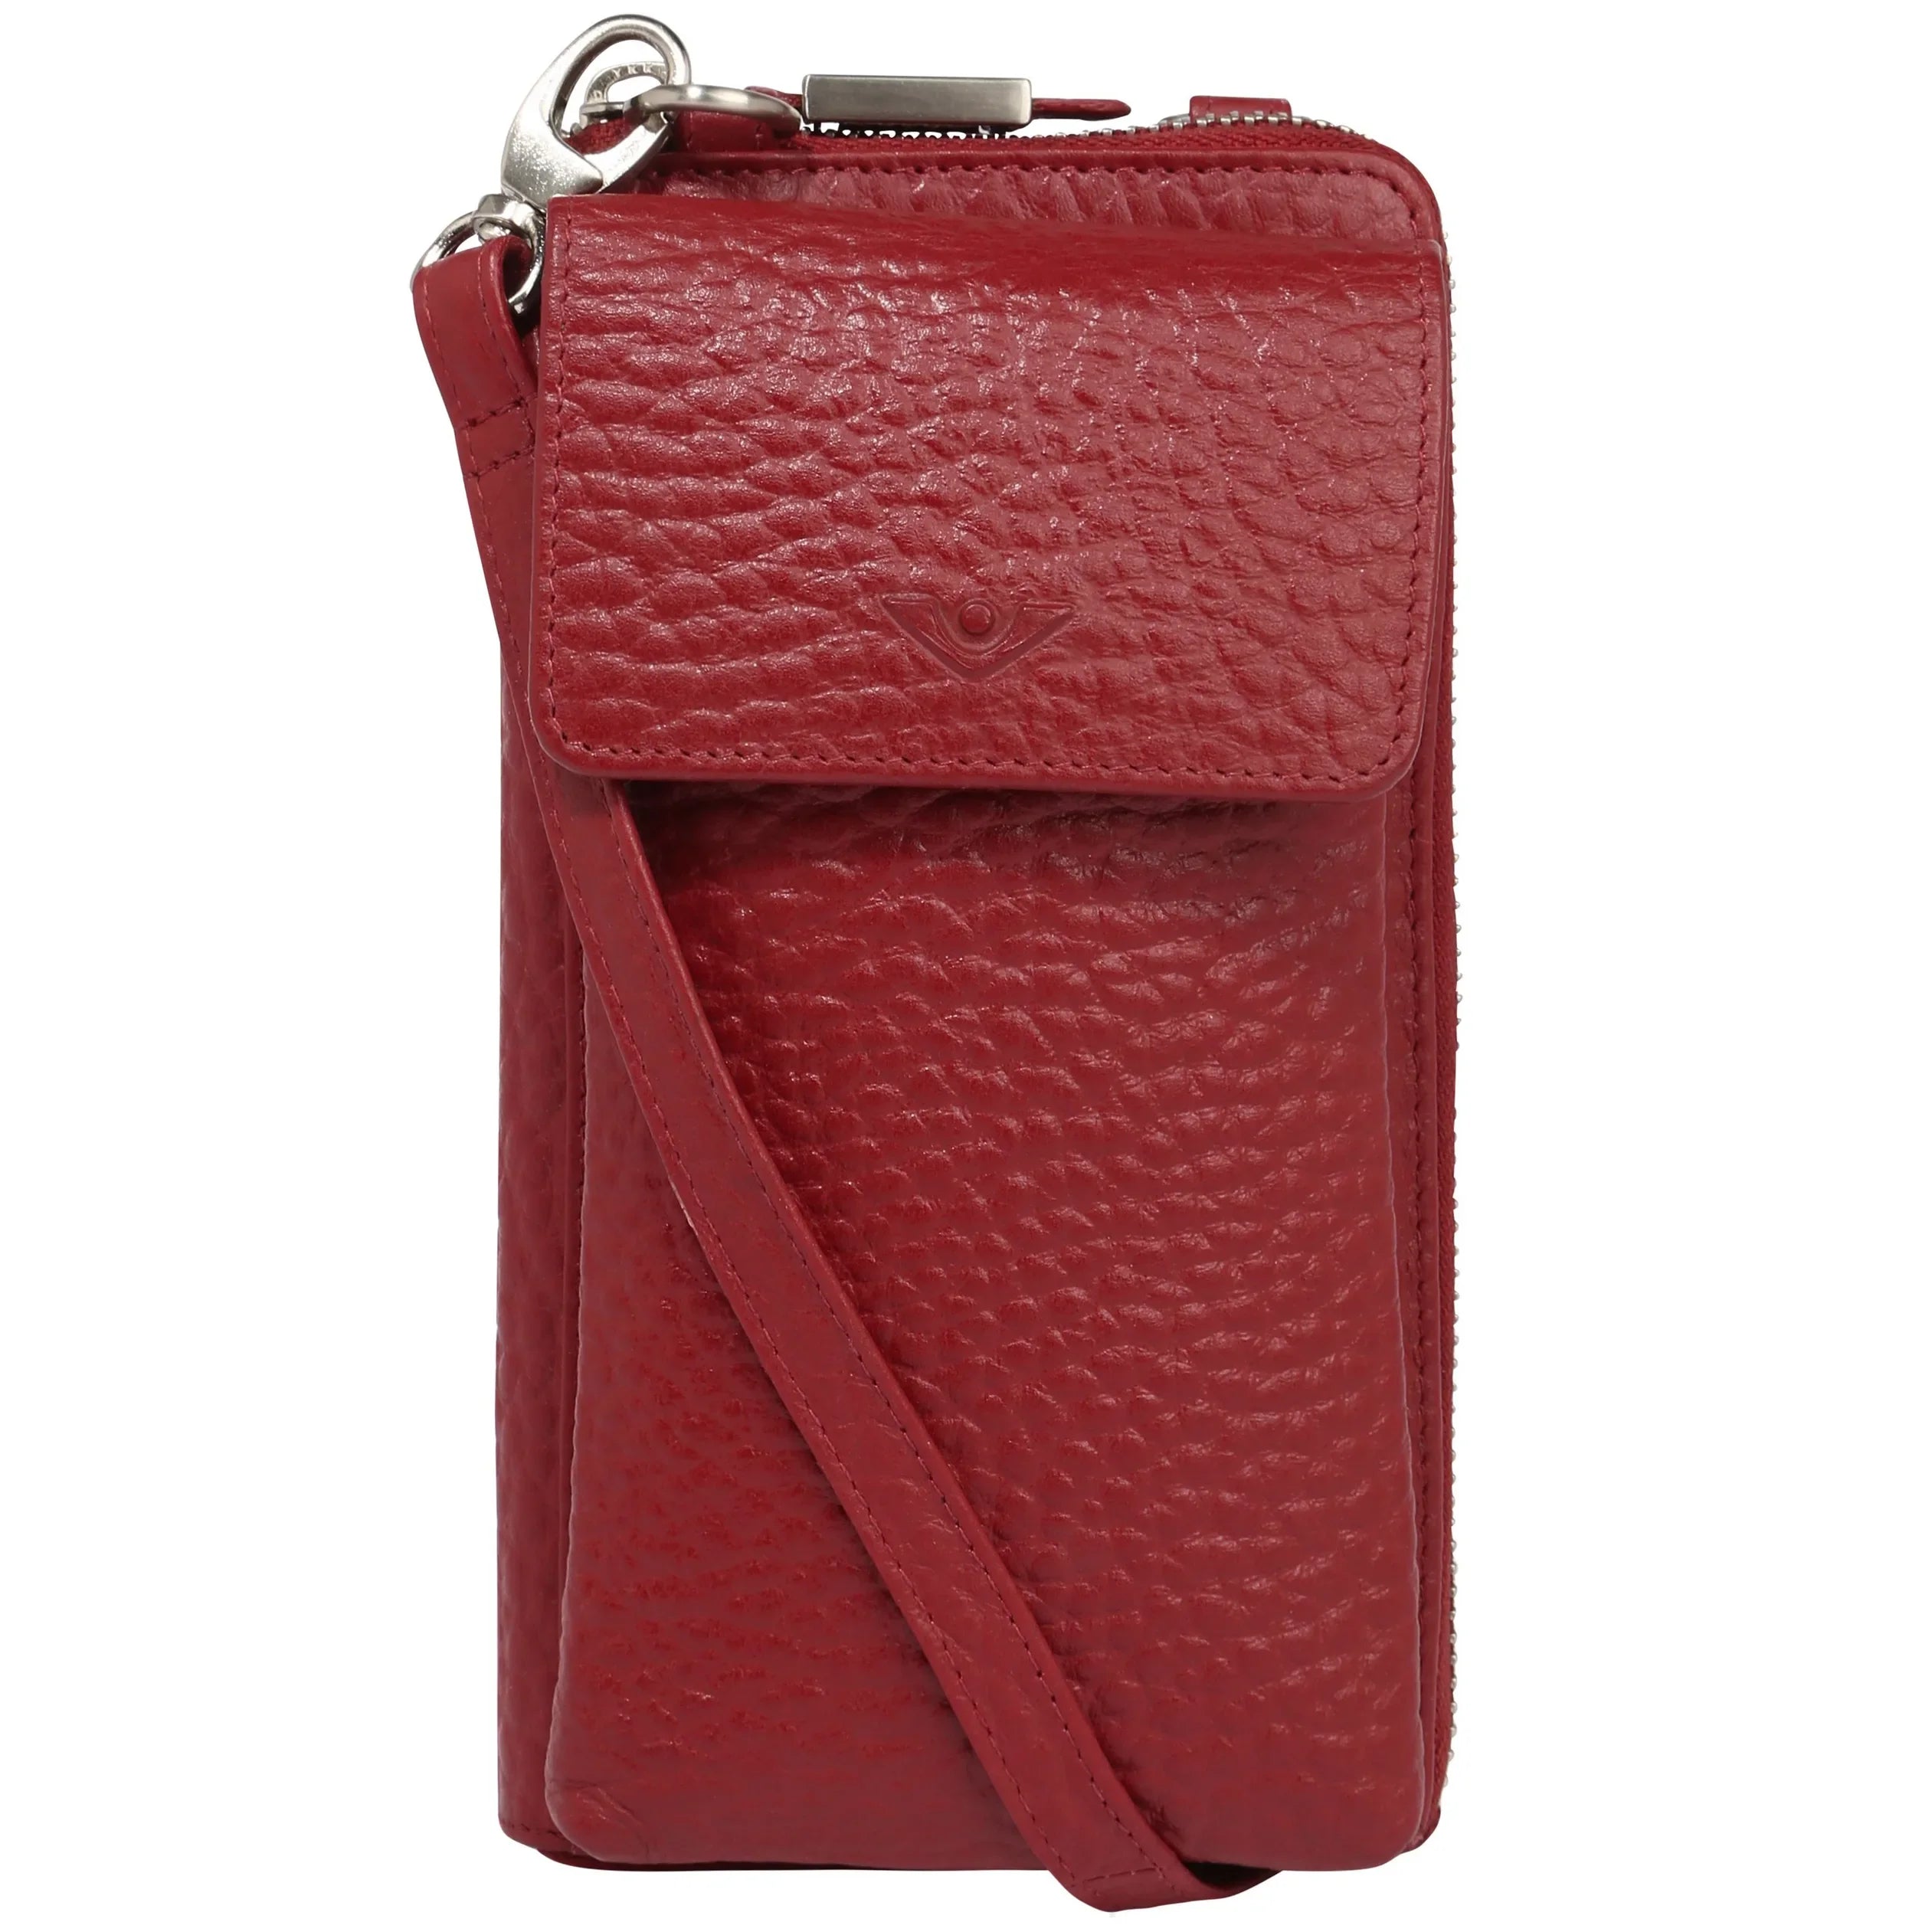 VOi-Design Stag Bonita cell phone wallet 19 cm - Garnet